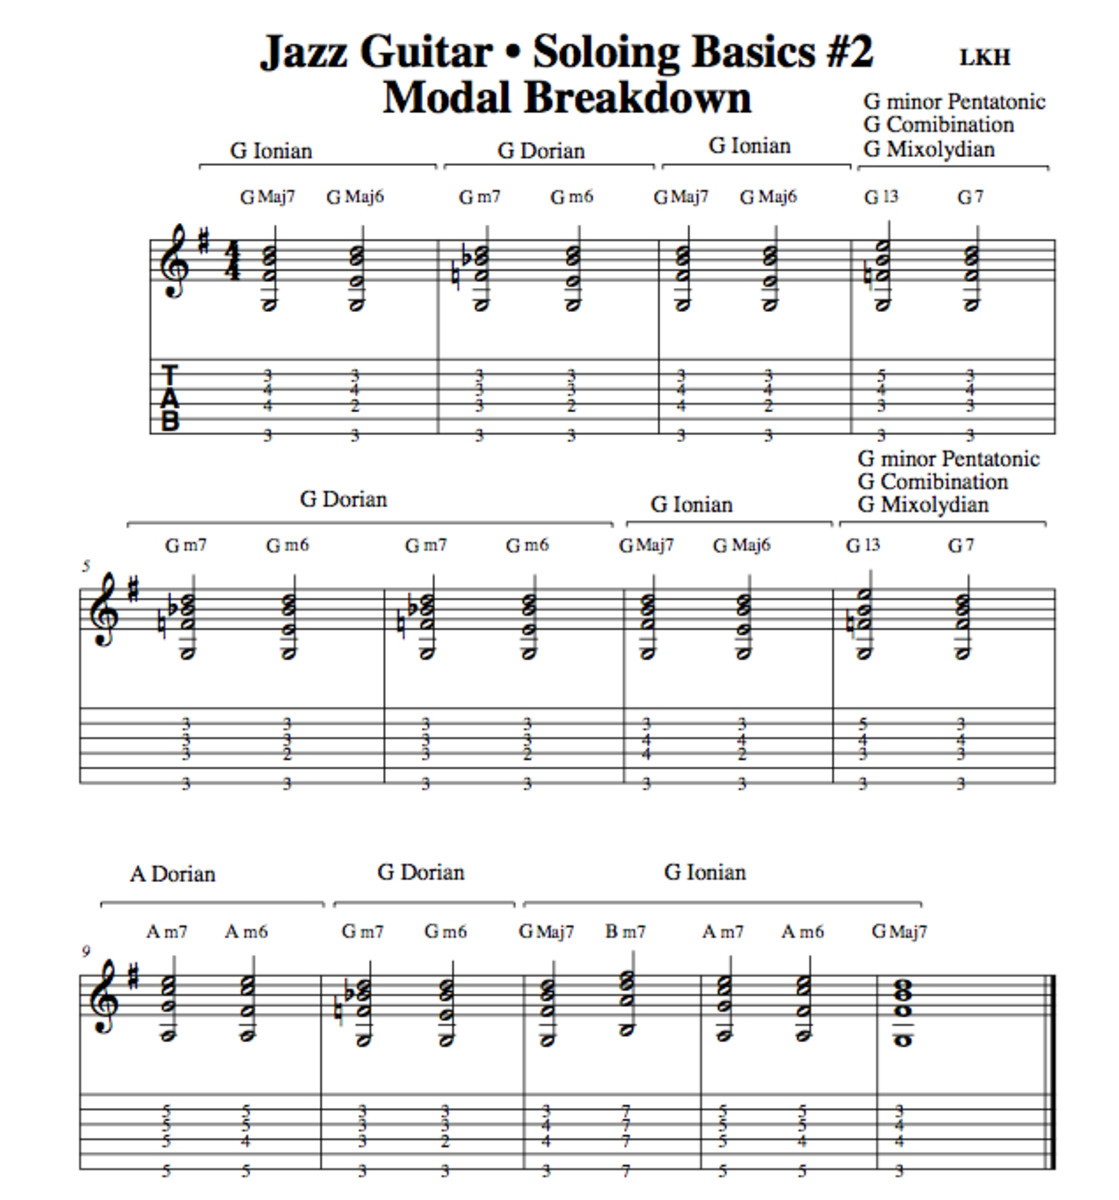 Guitar Standard Notation Chart